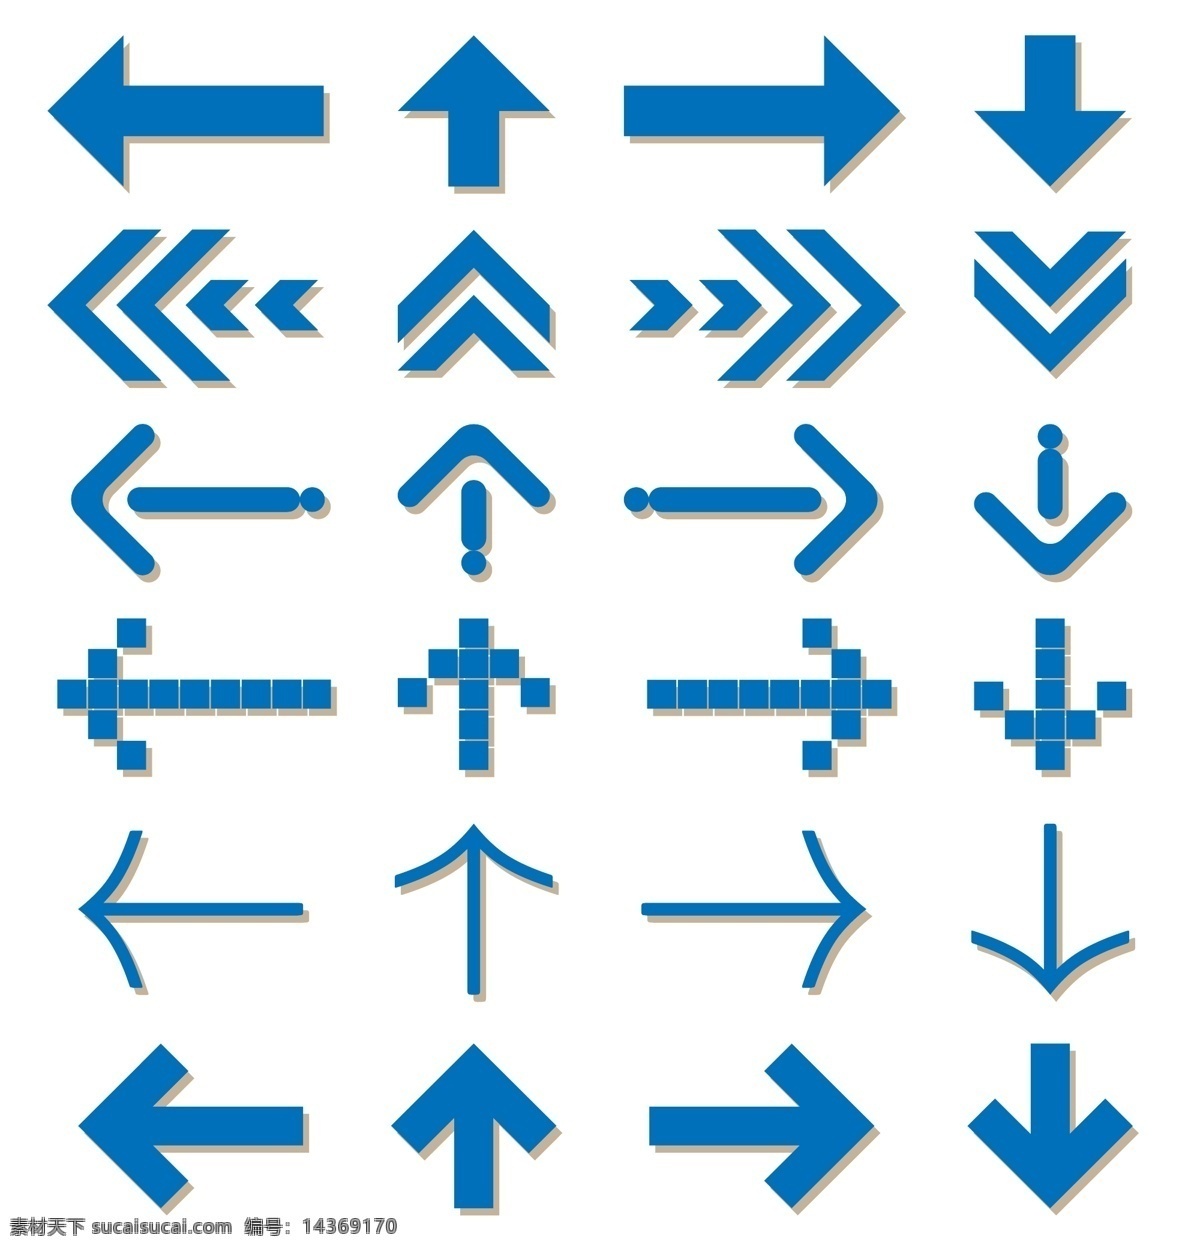 箭头矢量图标 箭头 方向 导向标识 矢量图标 矢量图形 导向 上下左右 指向 图形标志 标志图标 公共标识标志